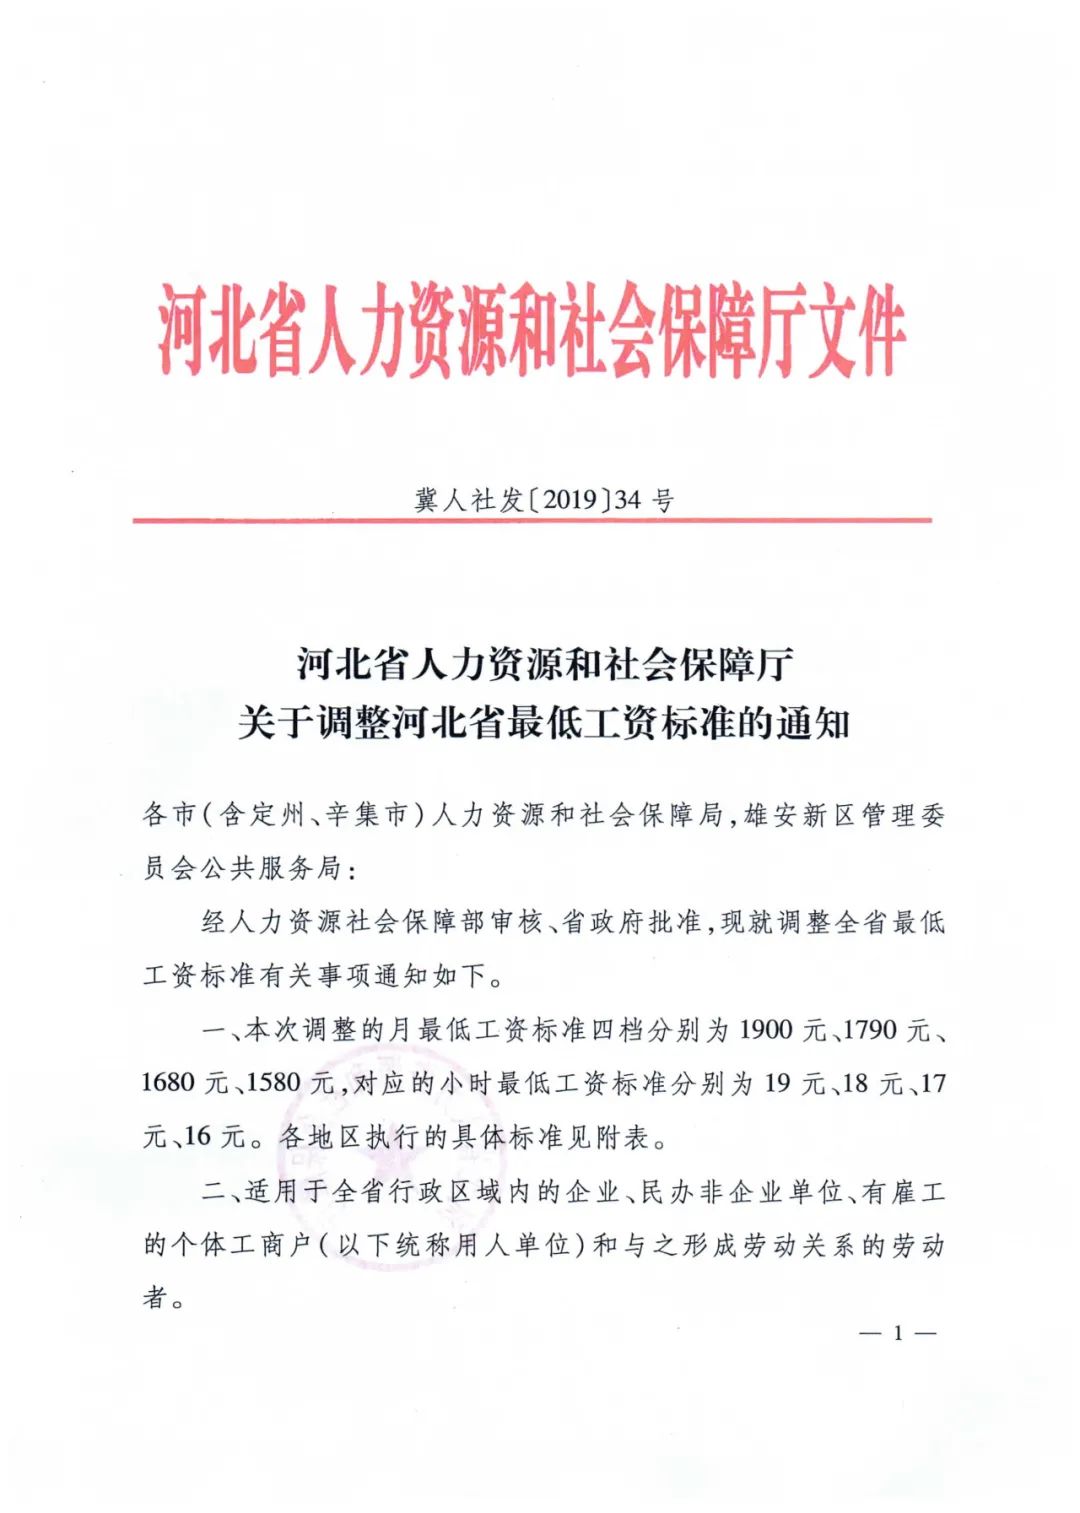 关于调整河北省最低工资标准的通知「冀人社发「2019」34号」